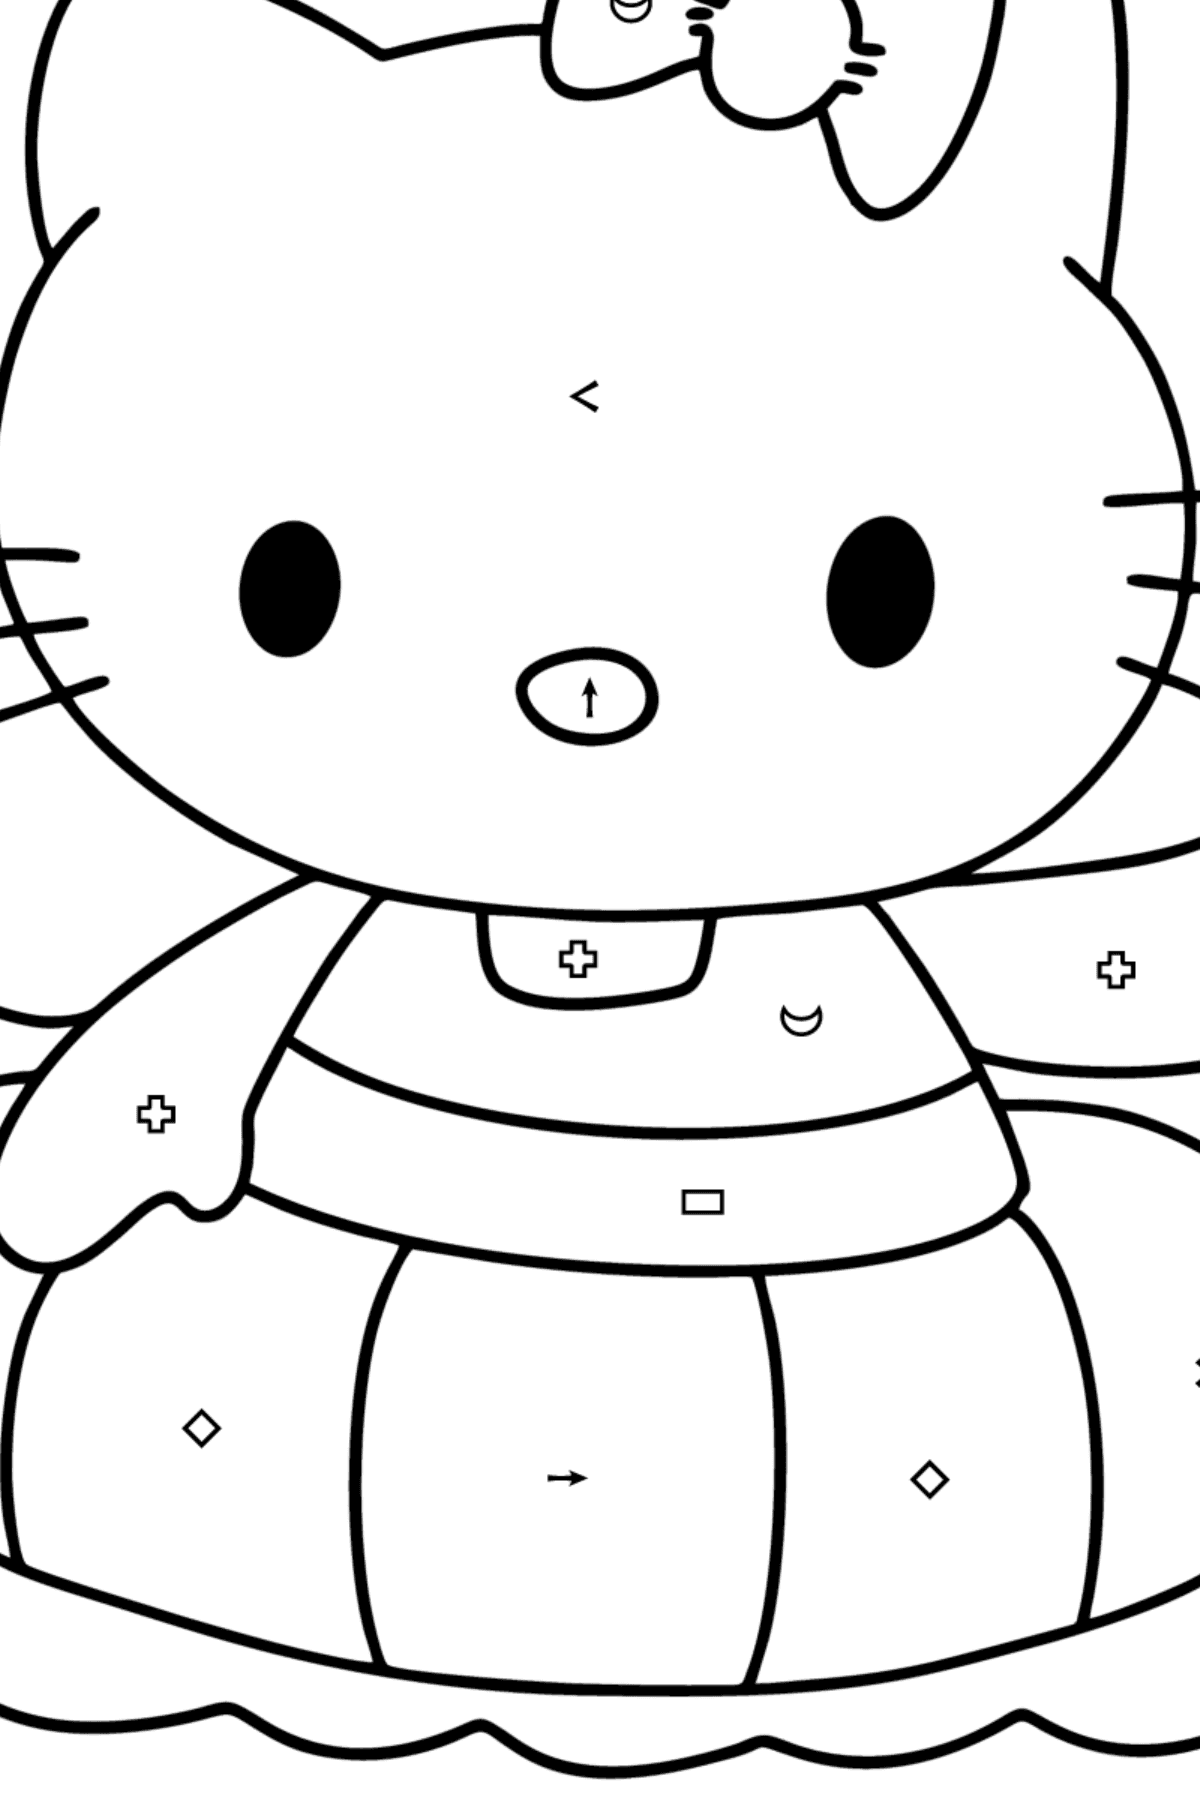 Boyama sayfası Hello Kitty yüzer - Sembollere ve Geometrik Şekillerle Boyama çocuklar için